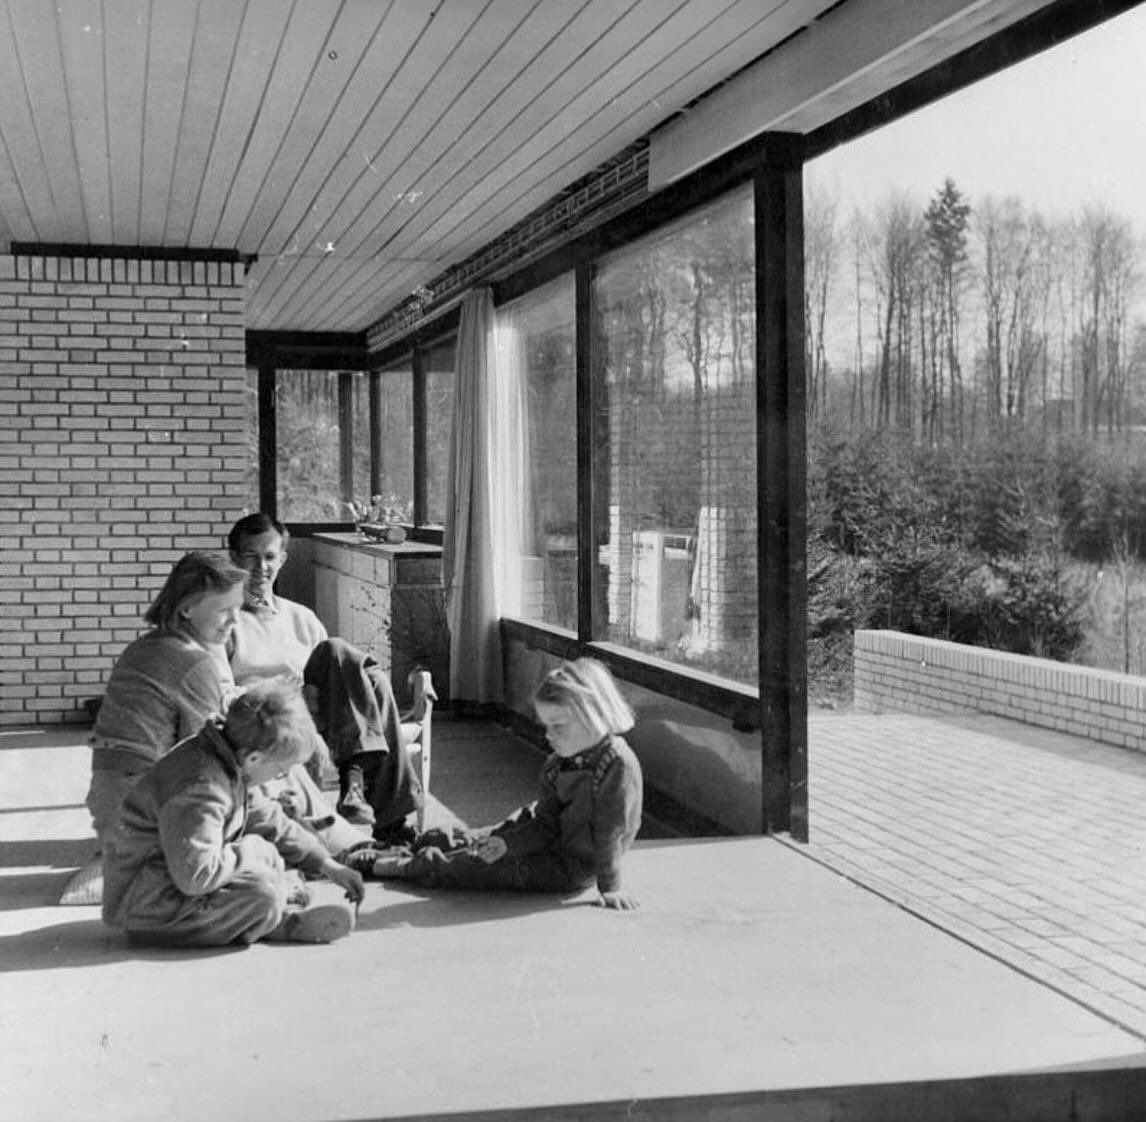 Casa Utzon, proyectada en 1952 como casa particular para el y su familia por Jørn Utzon, en Hellebæk, Dinamarca.

#Utzonhouse #Dinamarca #JørnUtzon #midcenturyhomes